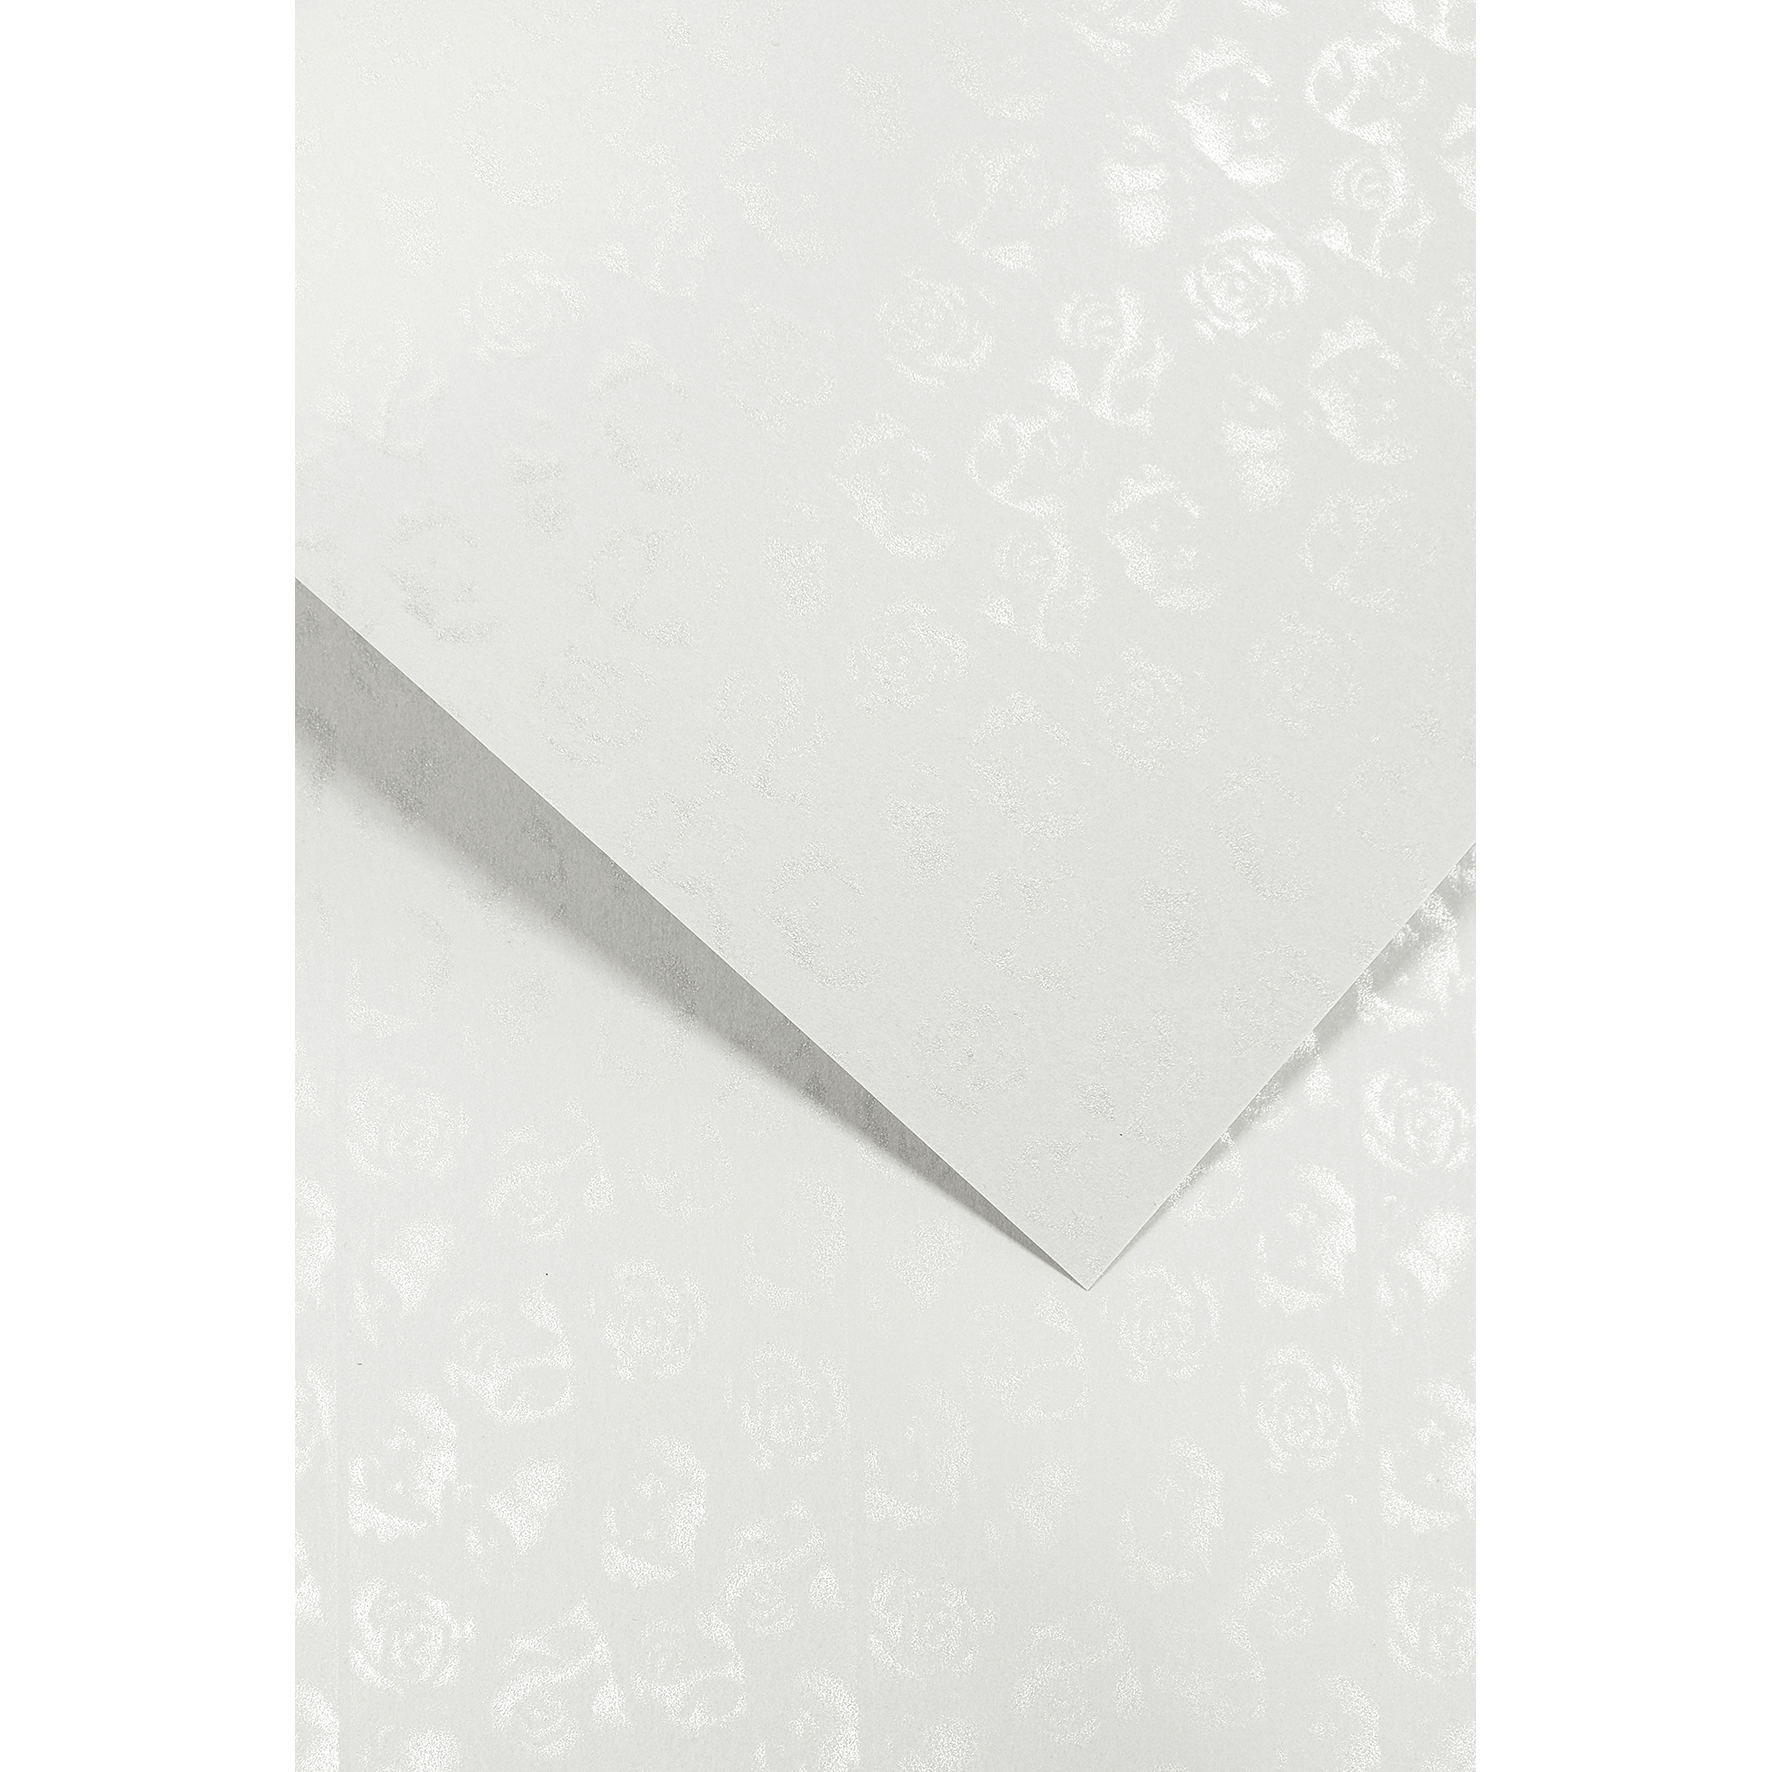 Ozdobný papír Malé růže, bílý, 220g, 20ks